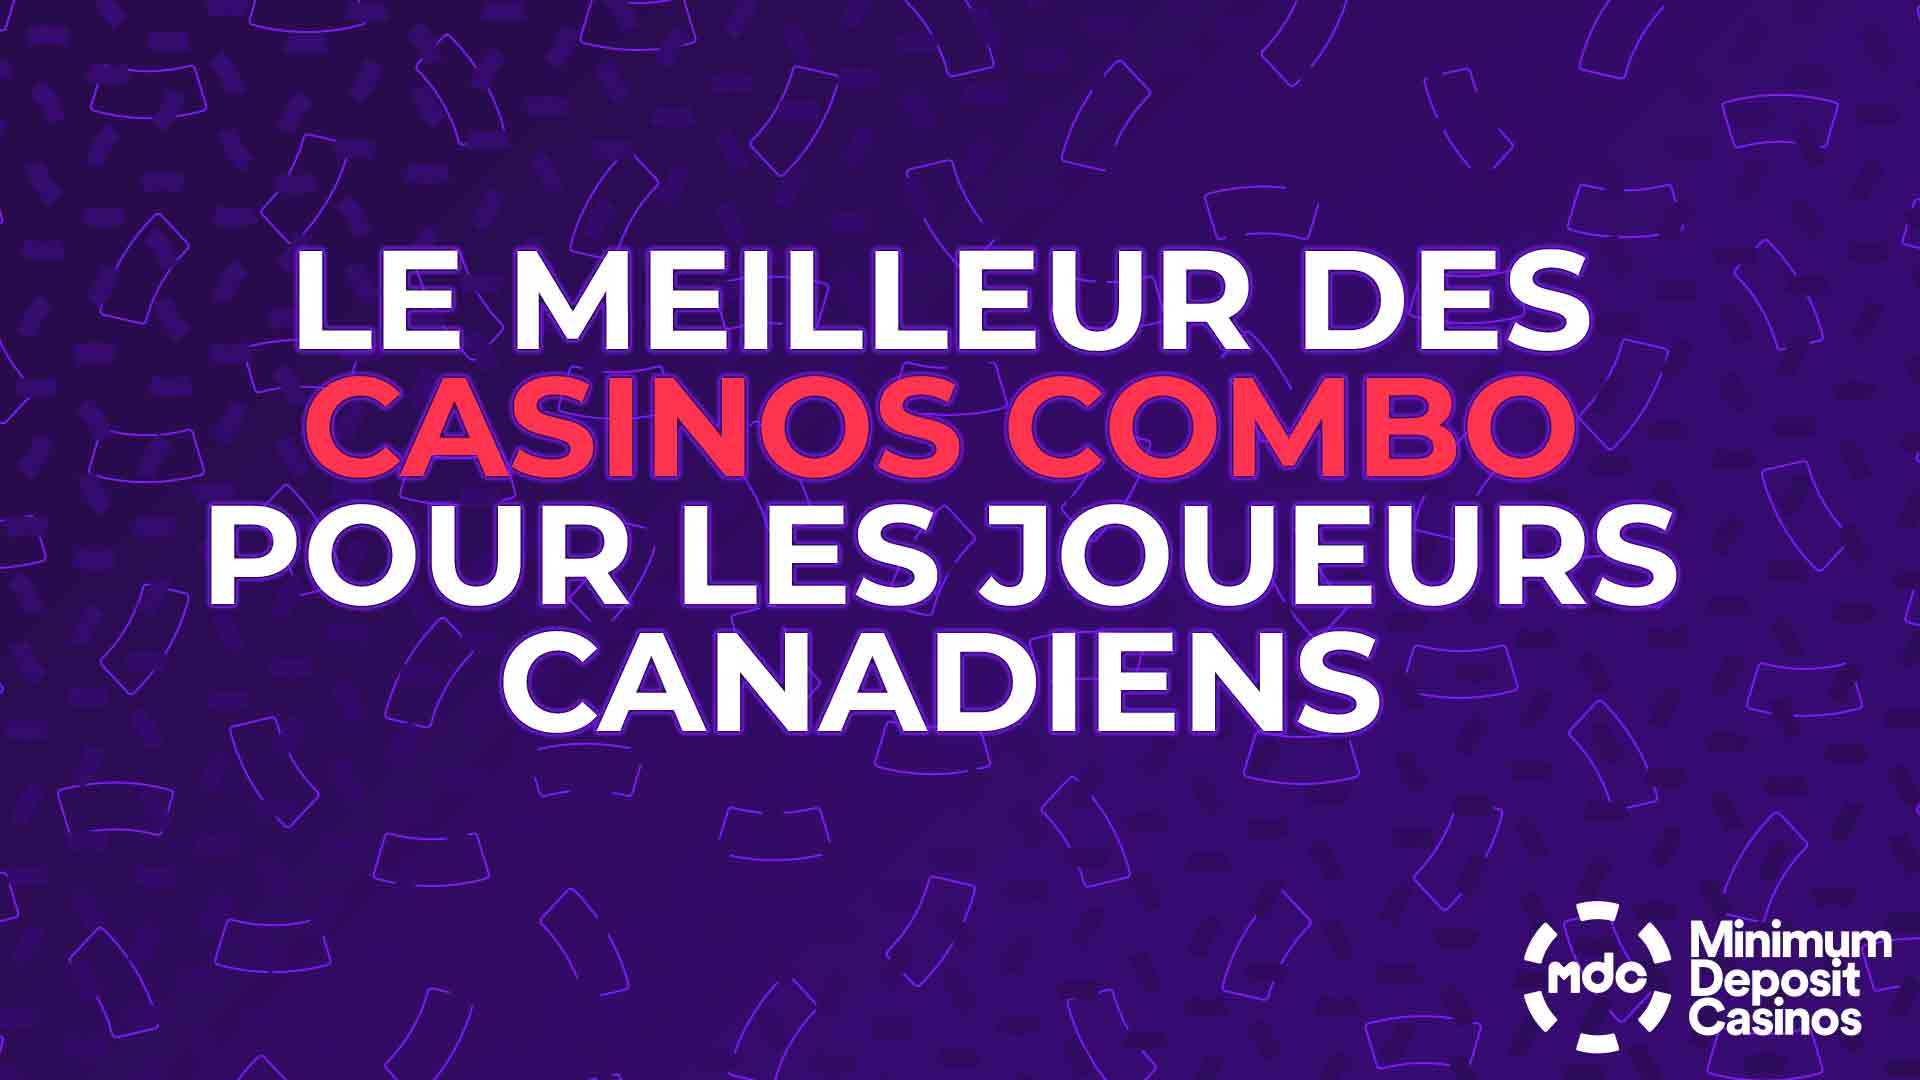 Les meilleurs casinos combo pour les Canadiens